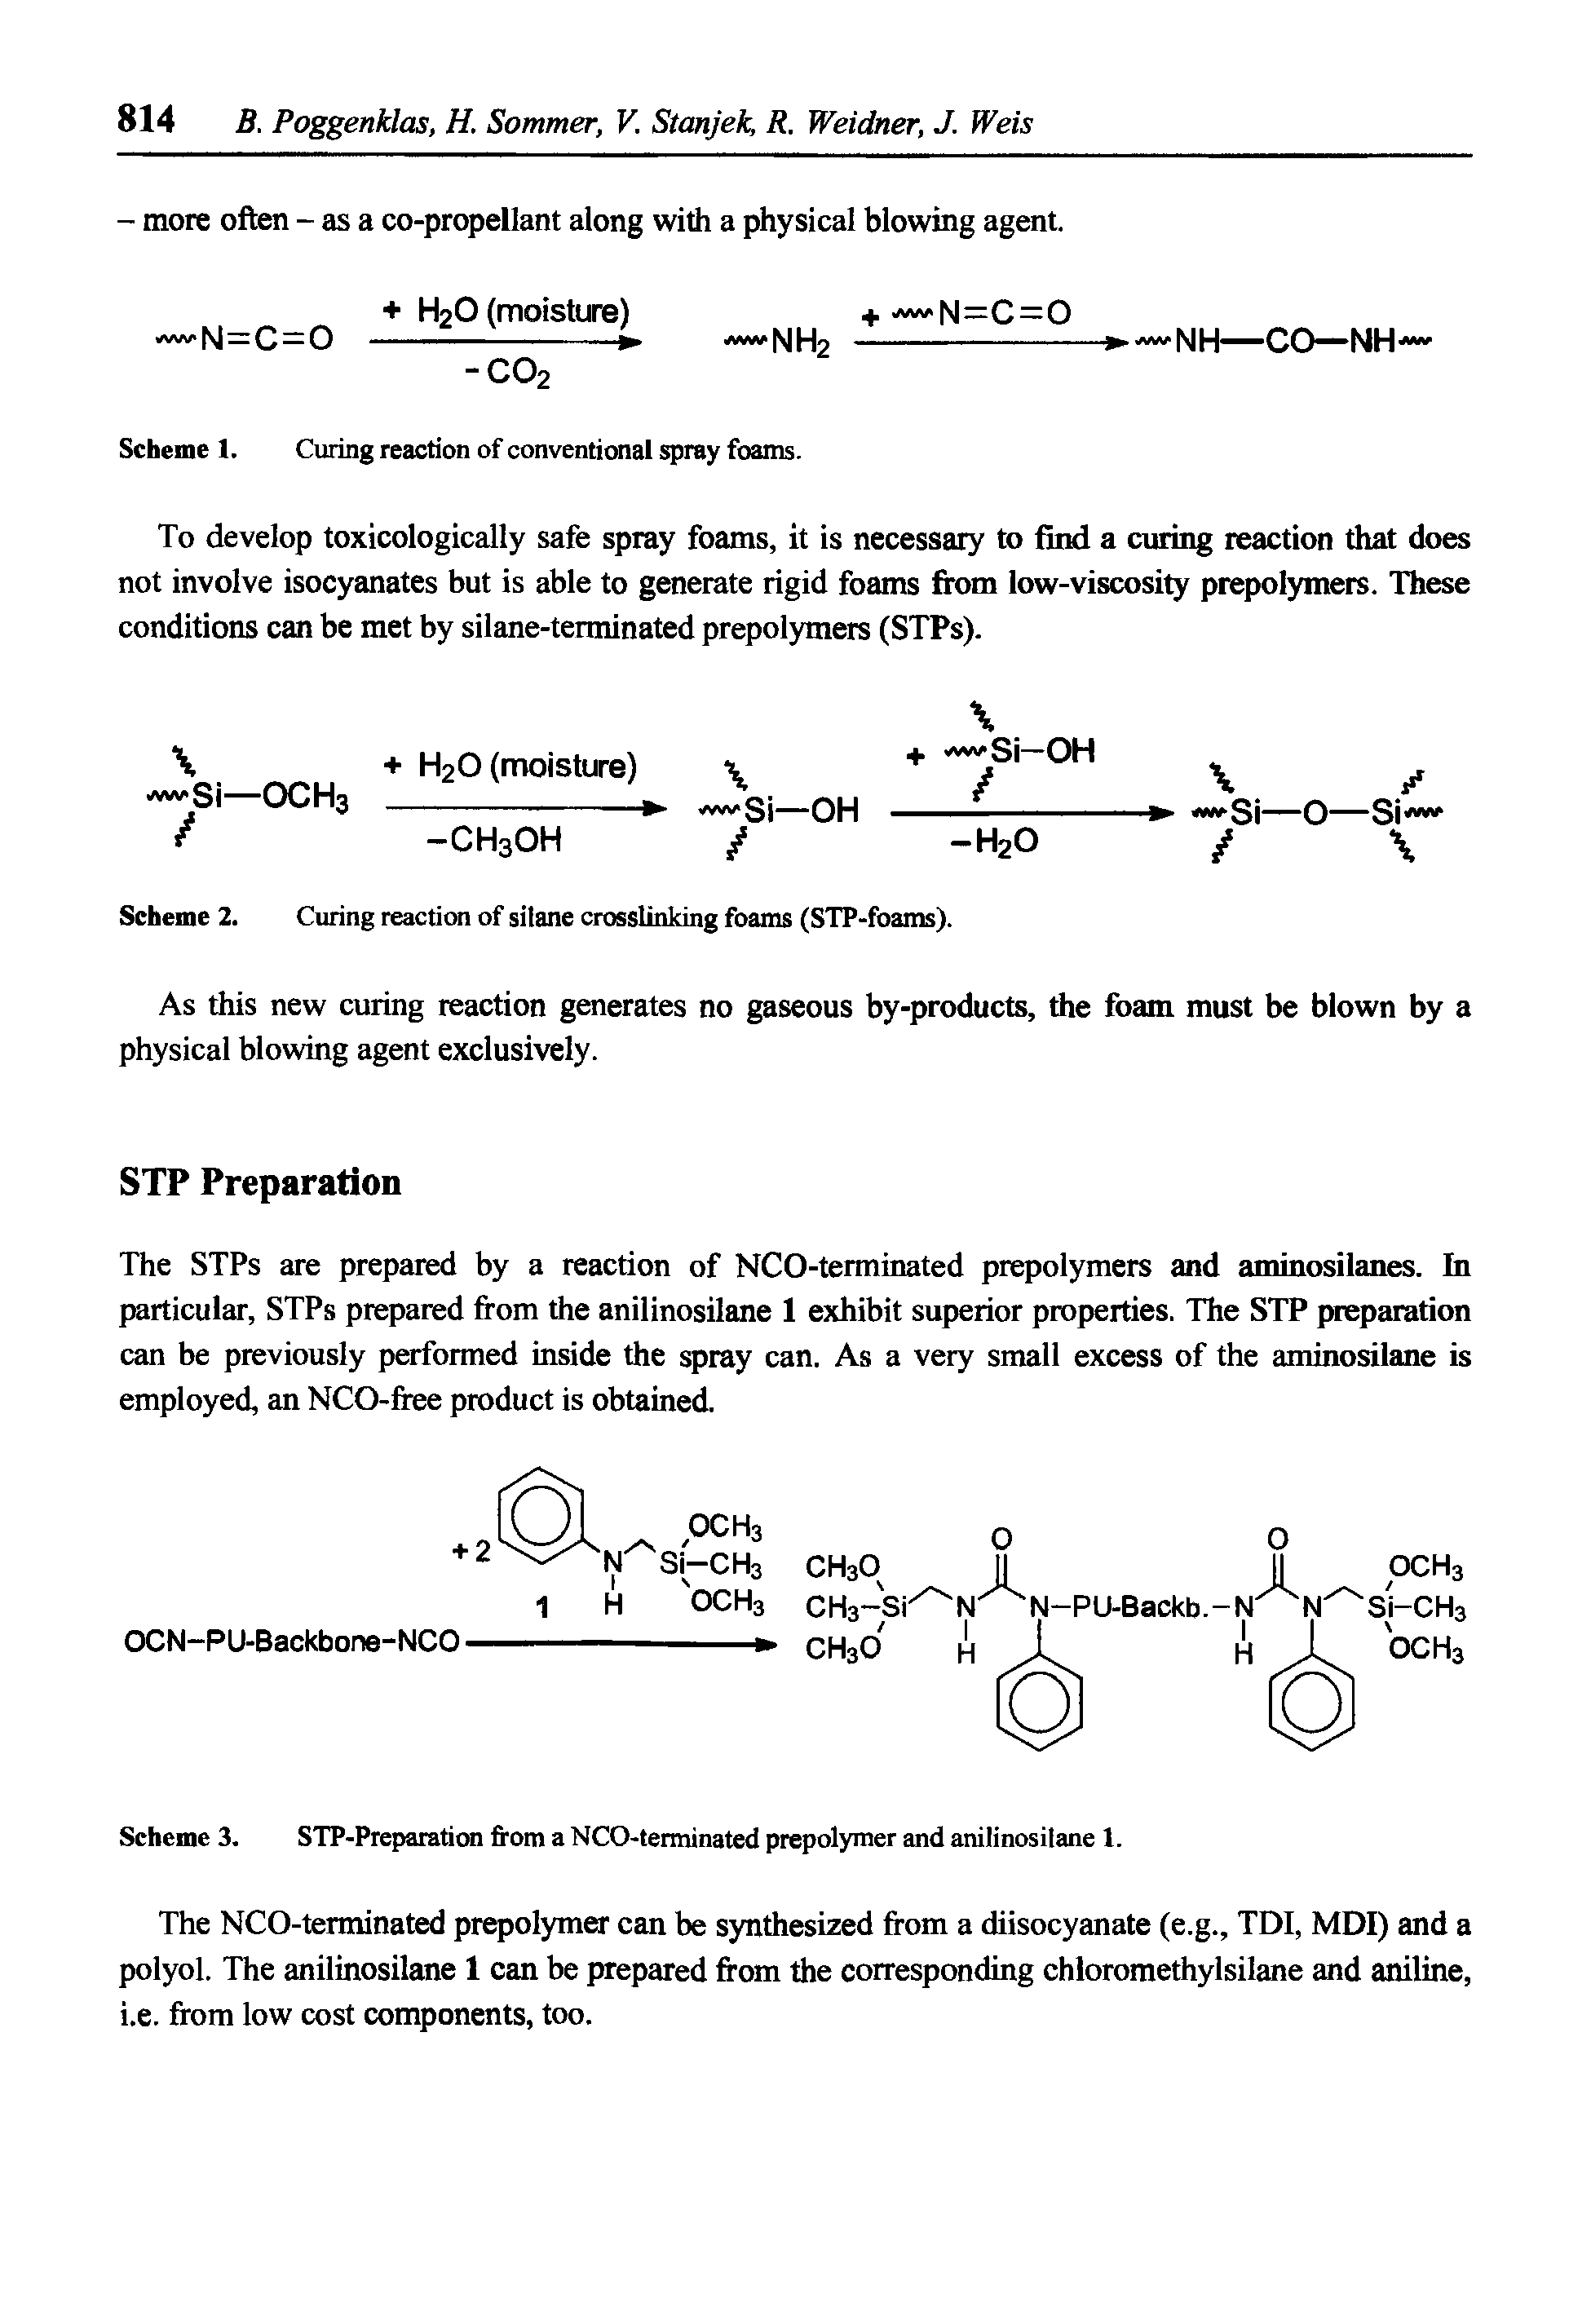 Scheme 2. Curing reaction of silane crosslinking foams (STP-foams).